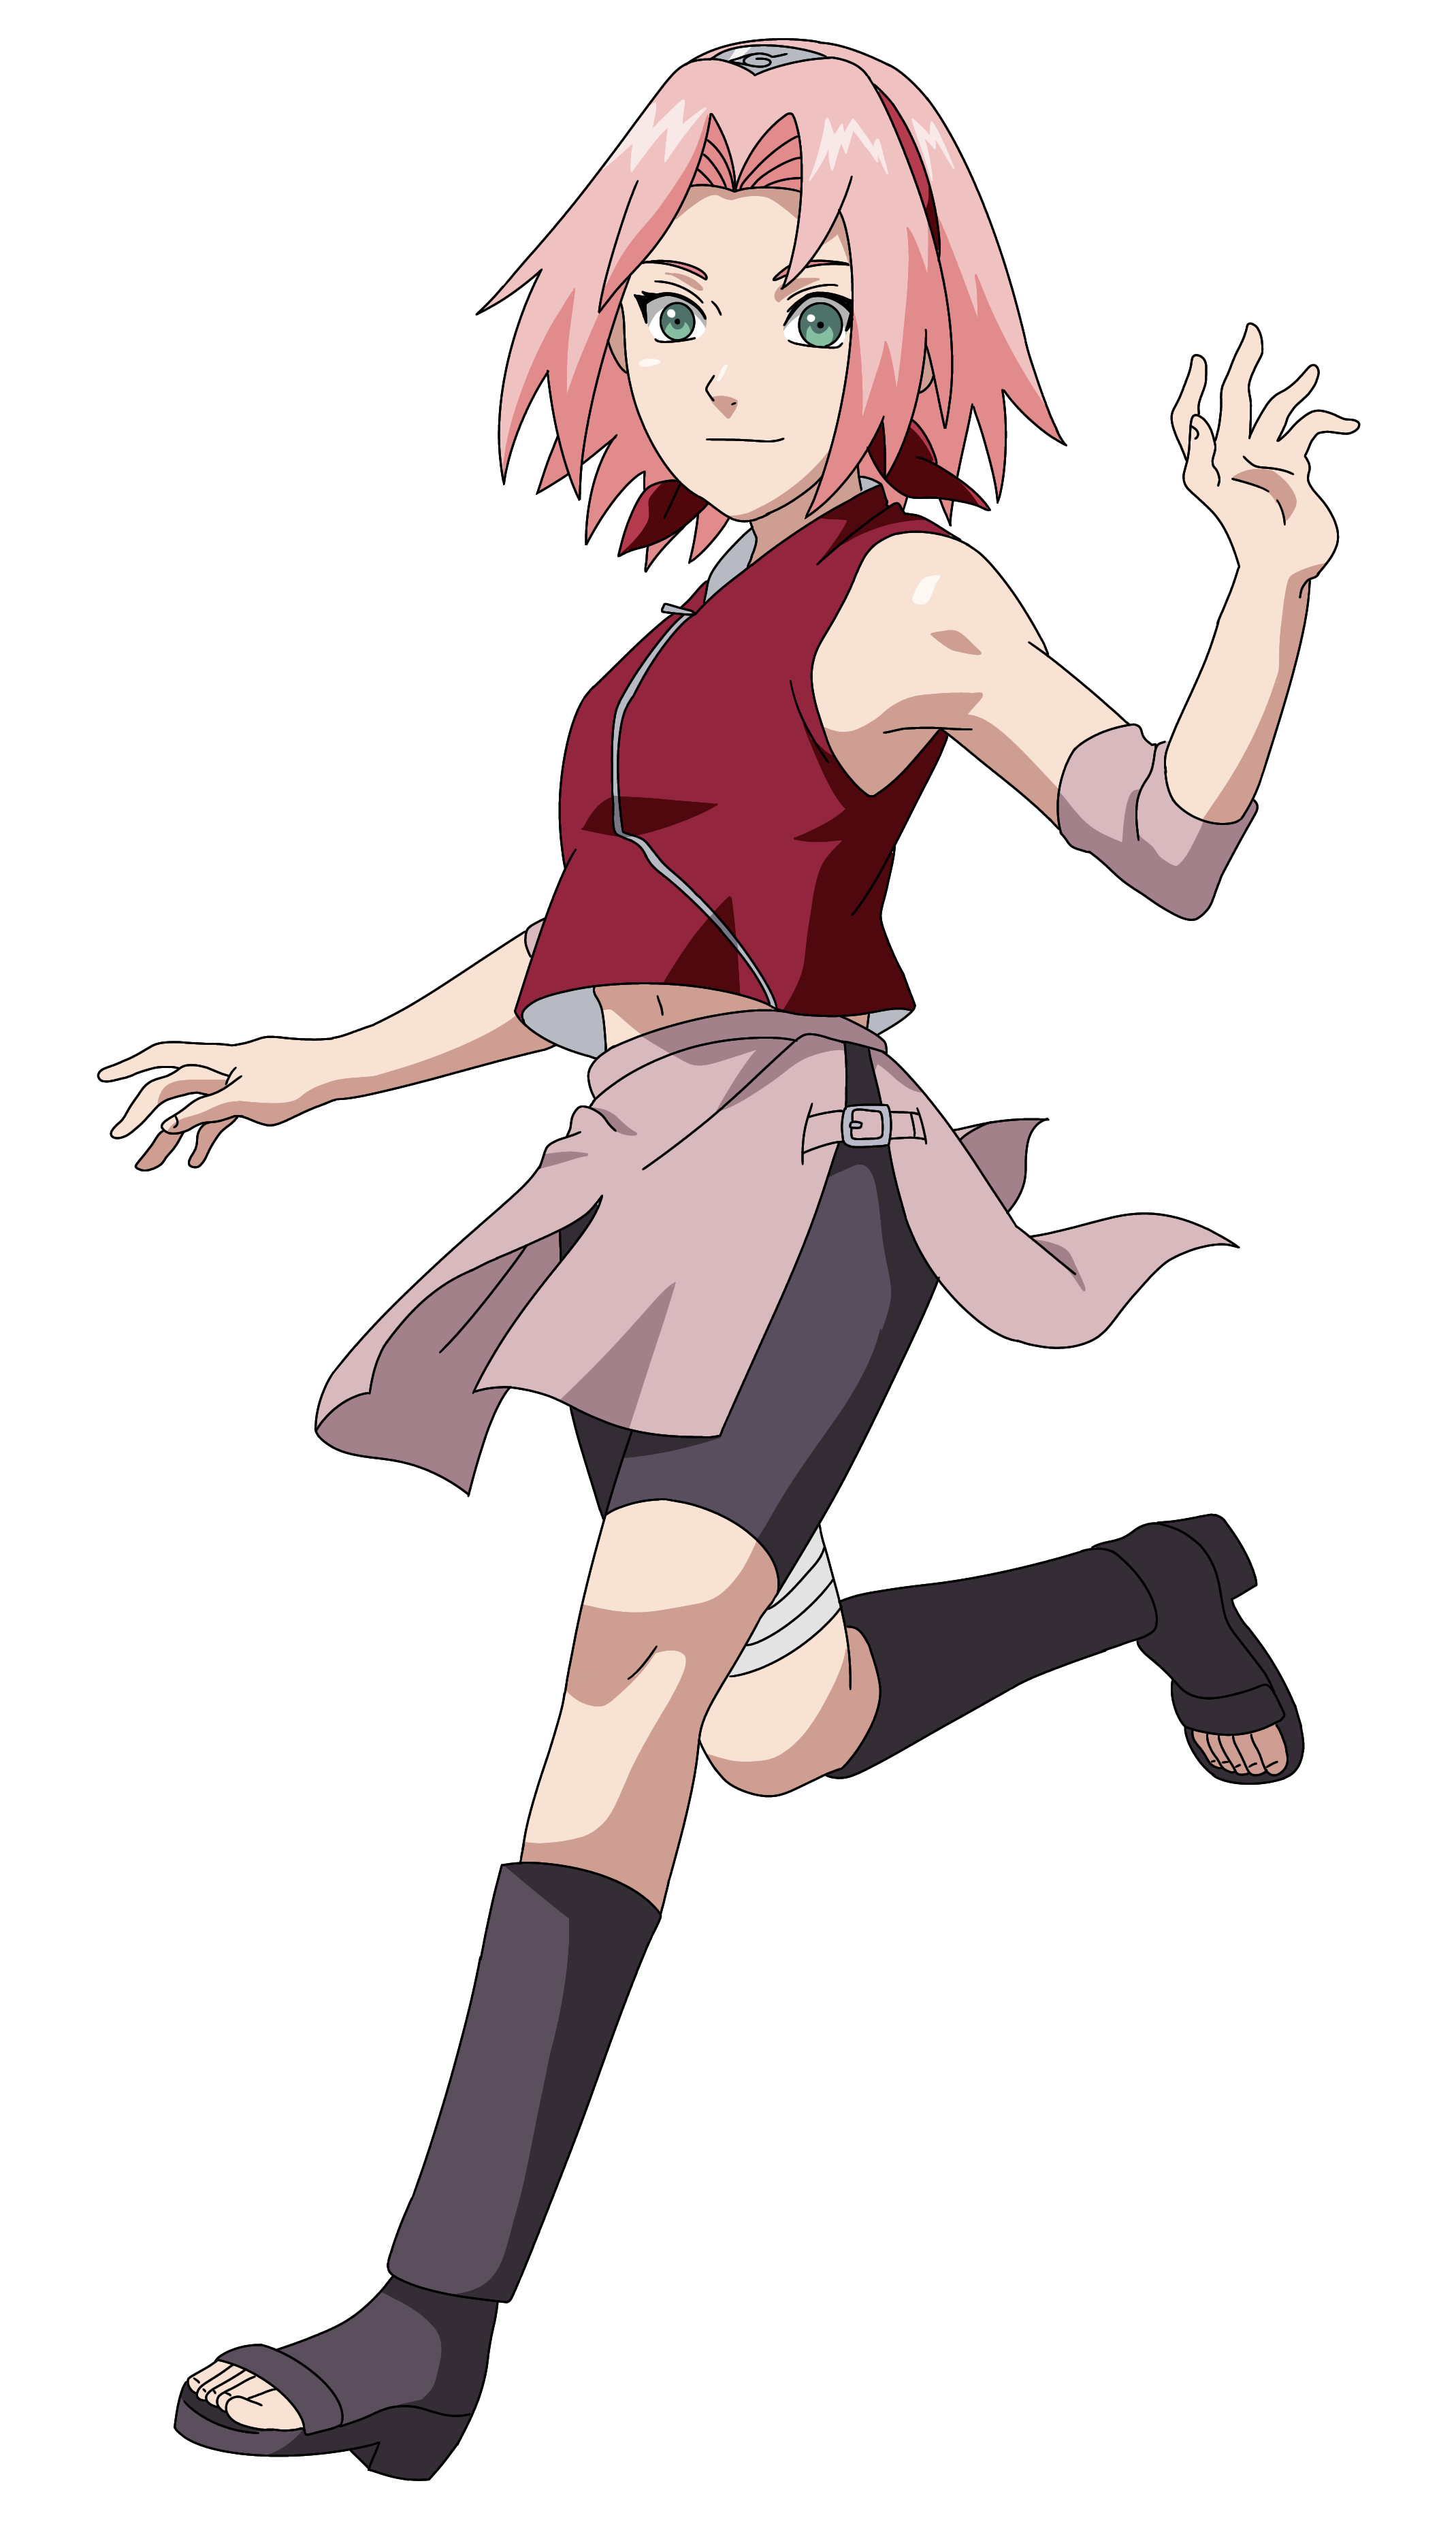 Sakura Haruno - Naruto by Shinoharaa on DeviantArt